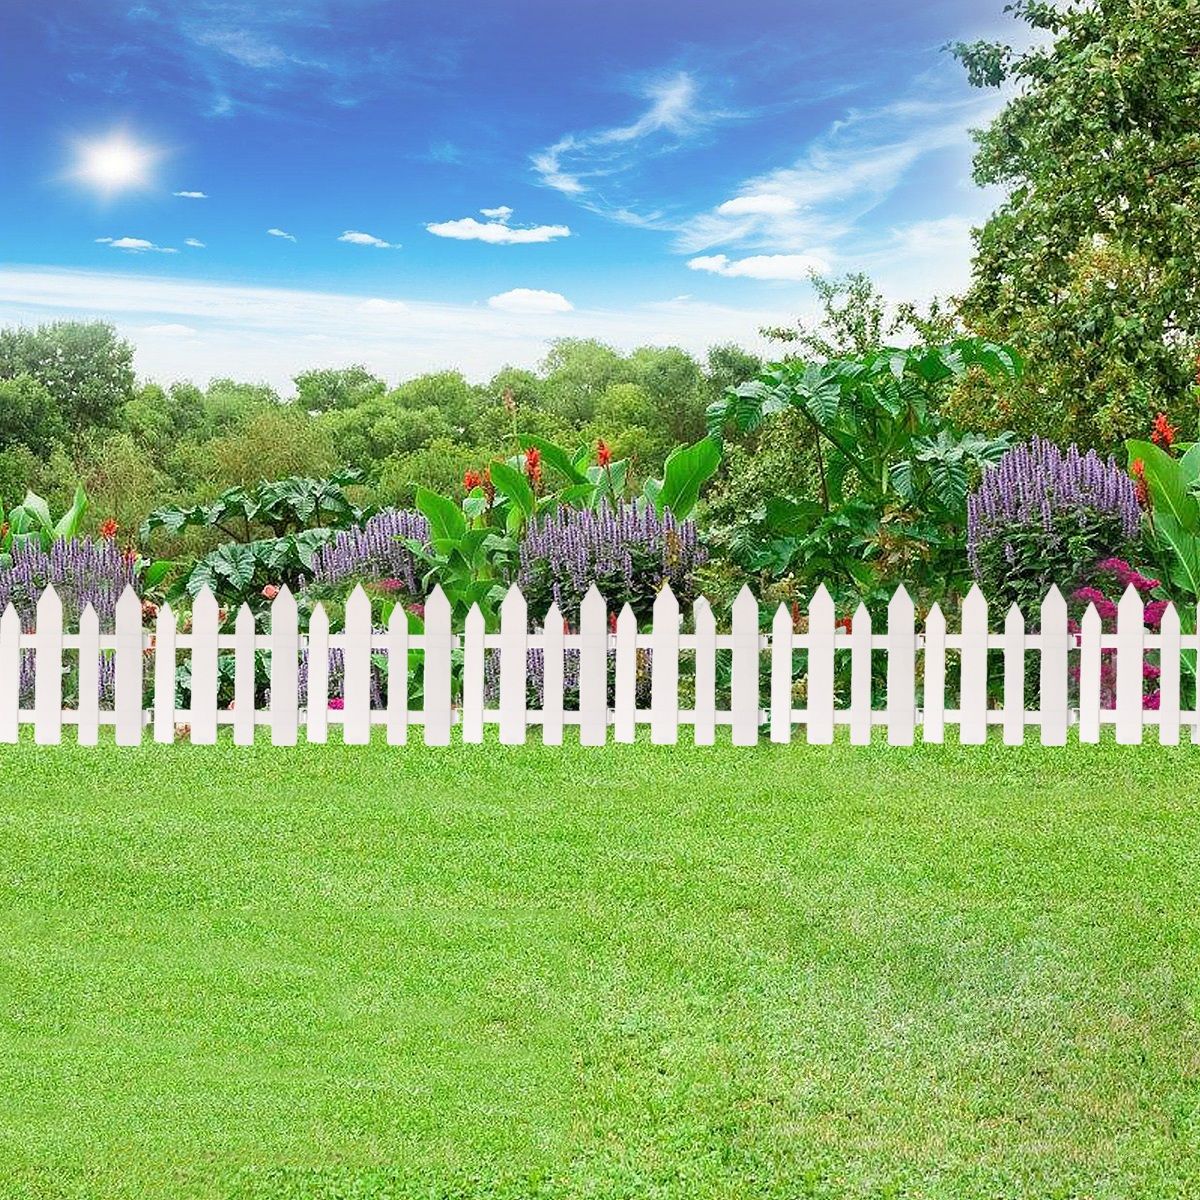 1224PCS-Outdoor-PVC-Plastic-White-Fence-Garden-Flowerpot-Parterre-Fence-Decoration-1741797